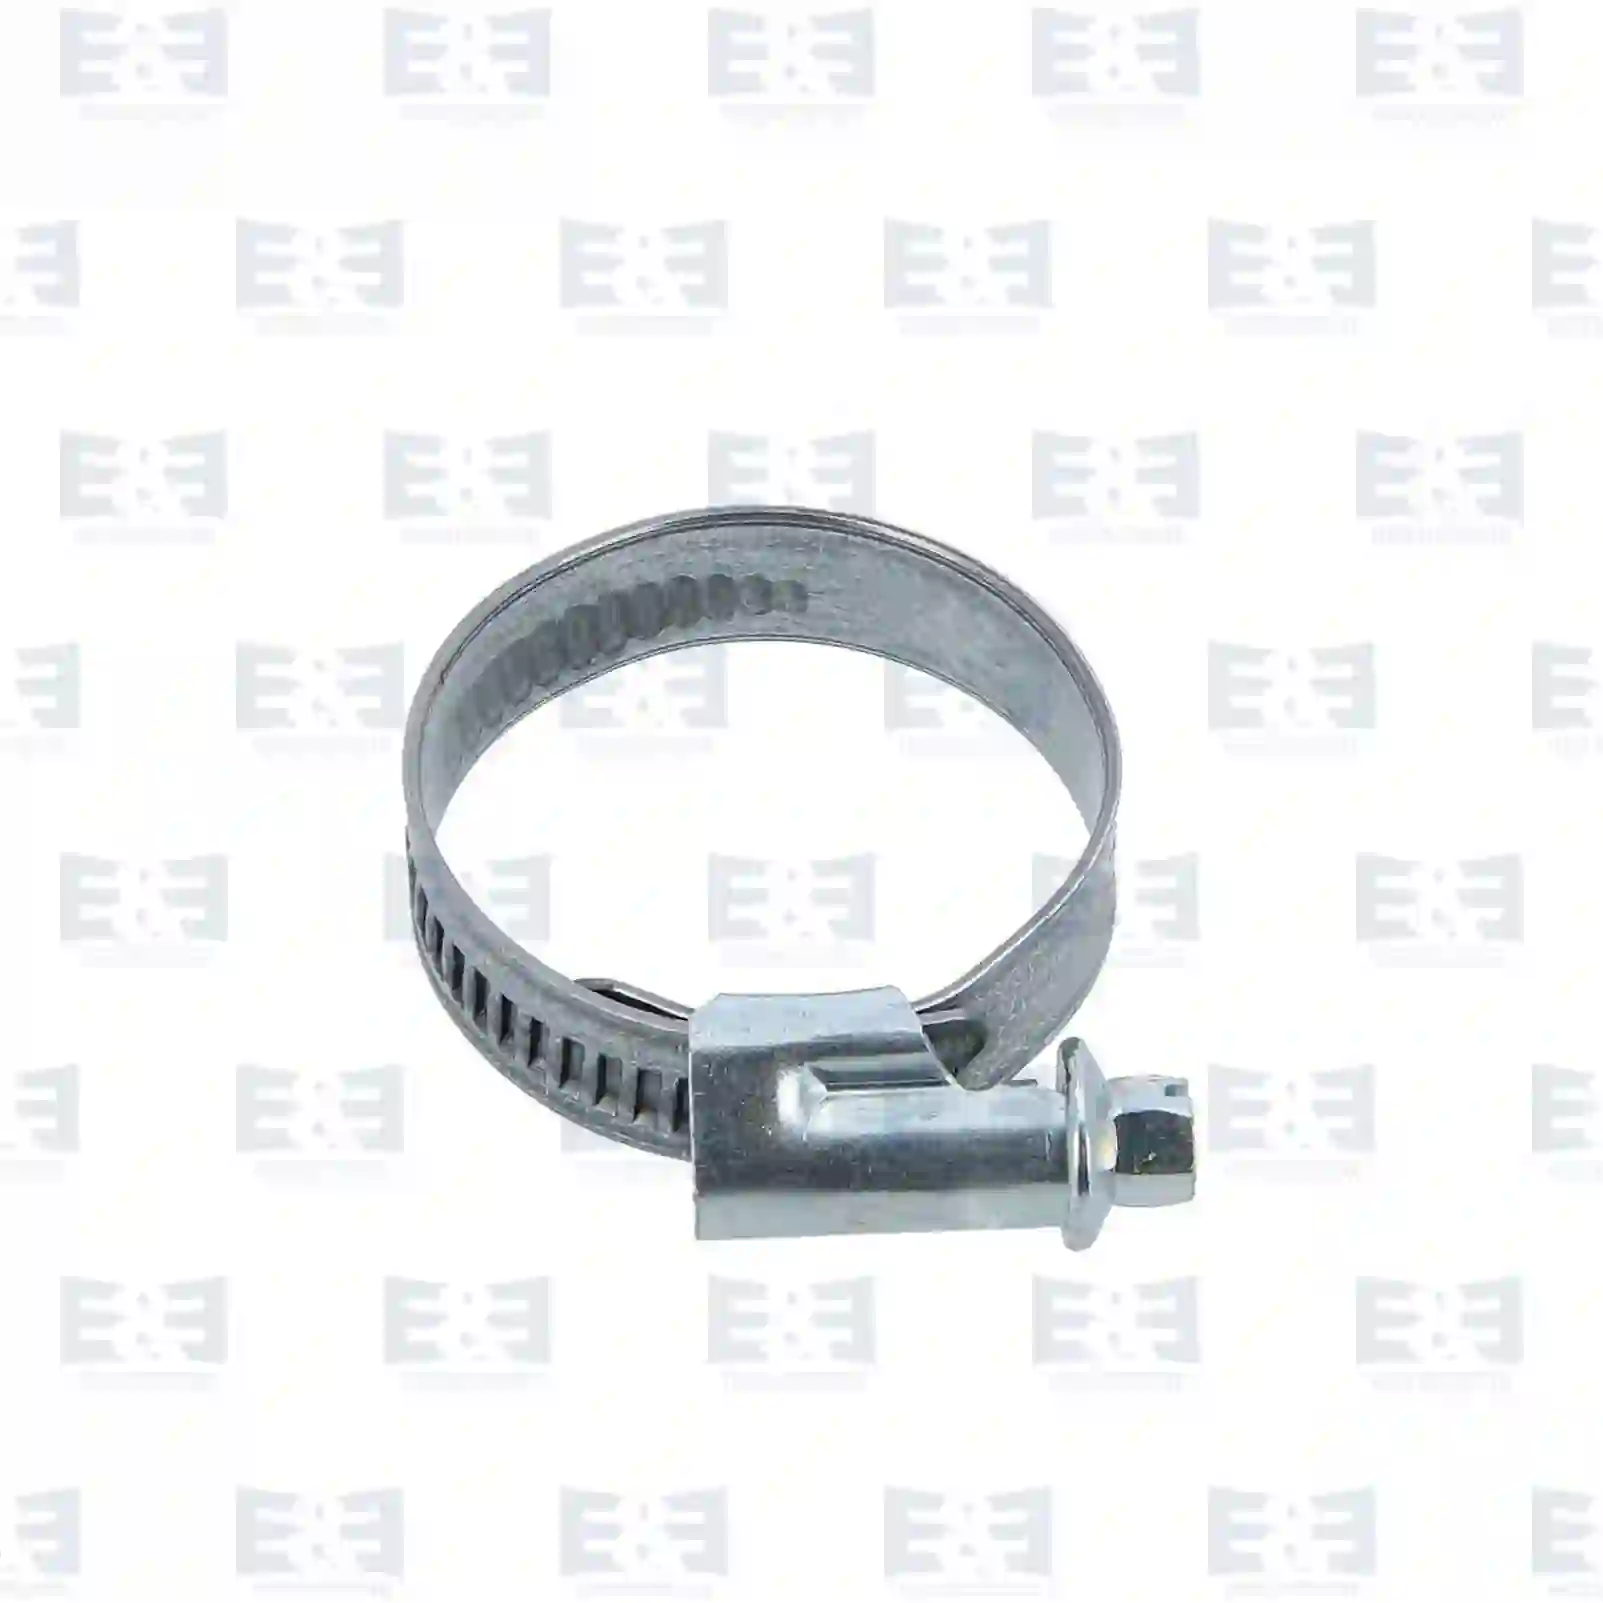  Hose clamp || E&E Truck Spare Parts | Truck Spare Parts, Auotomotive Spare Parts